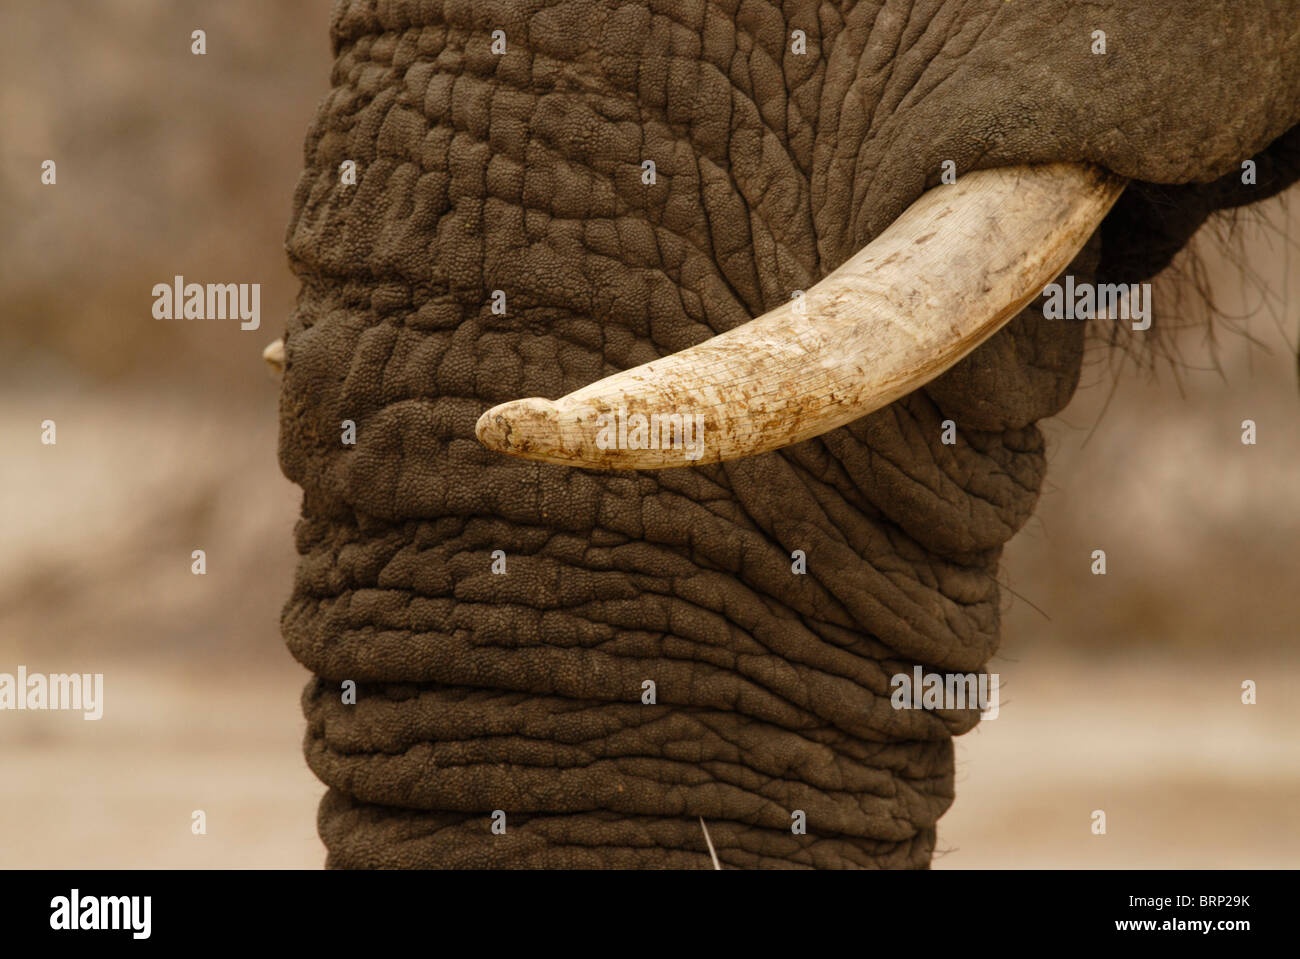 Close-up of notched tusk of elephant bull Stock Photo